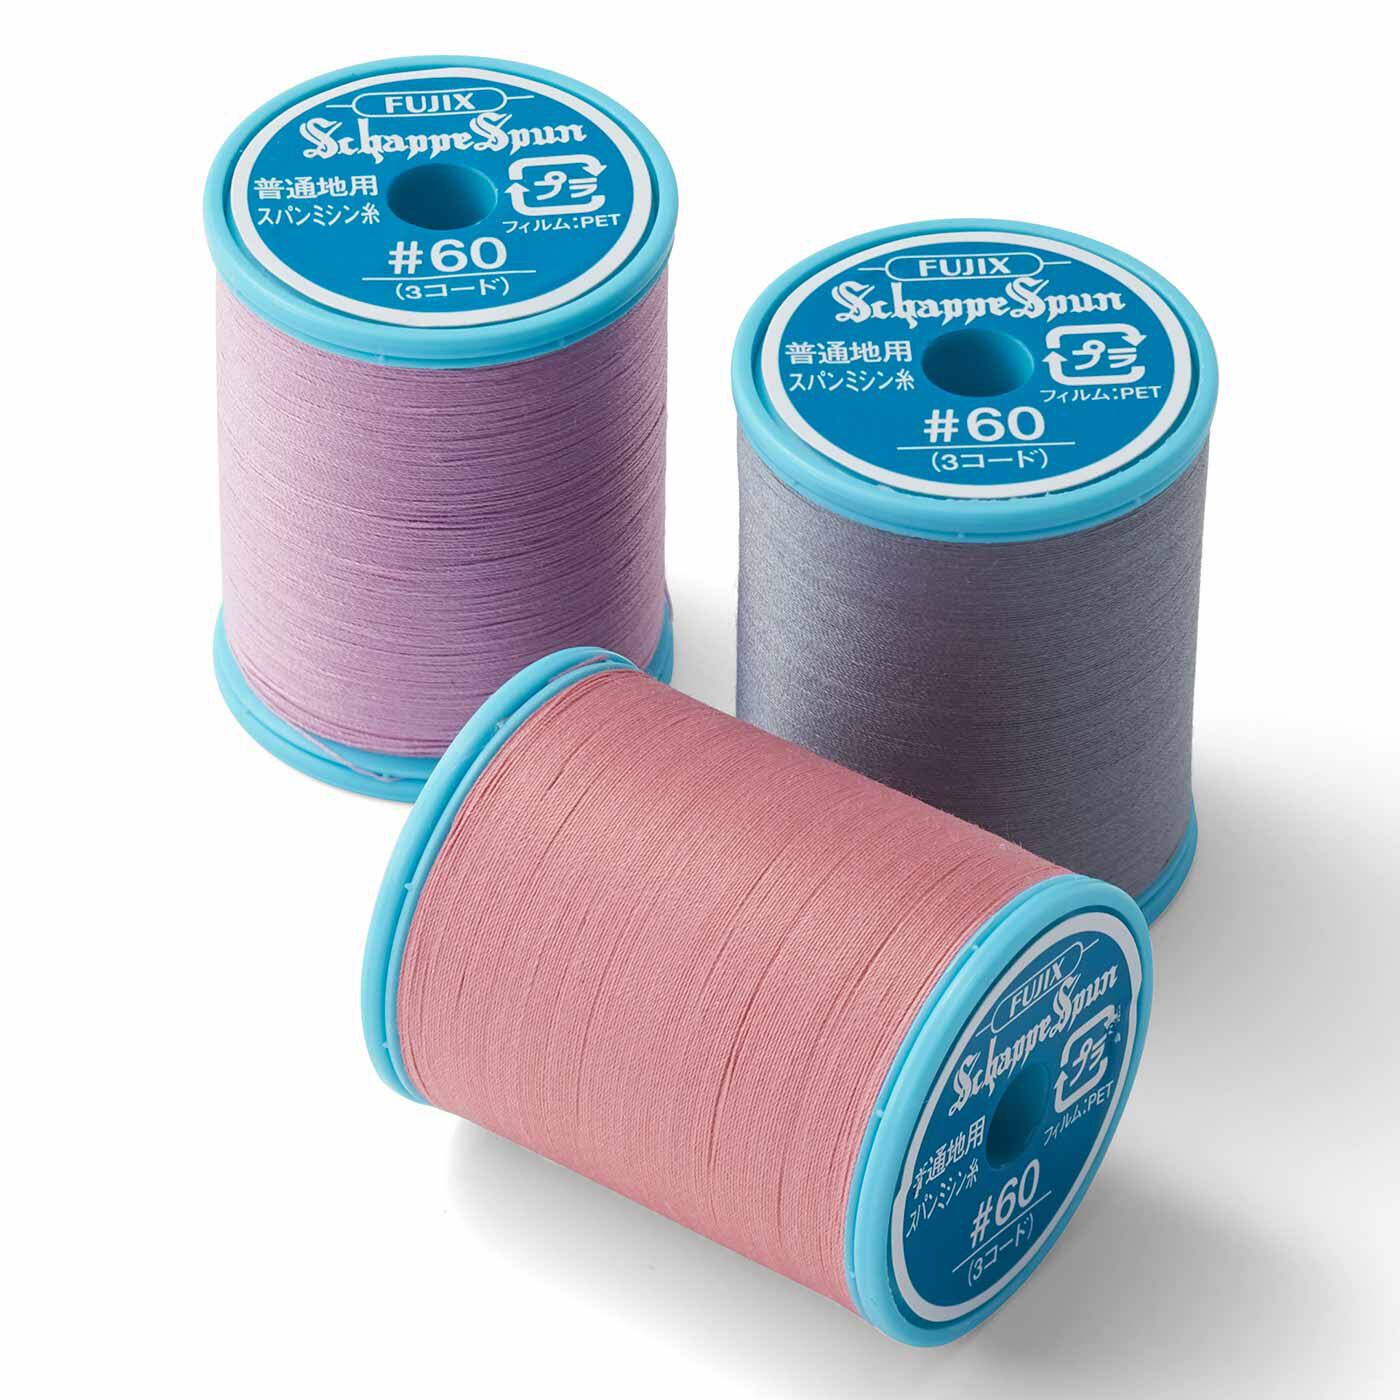 Couturier|これで縫ってね ニュアンスカラーのミシン糸セット|仕上がりに差！ 生地と同色の専用糸をセットで。